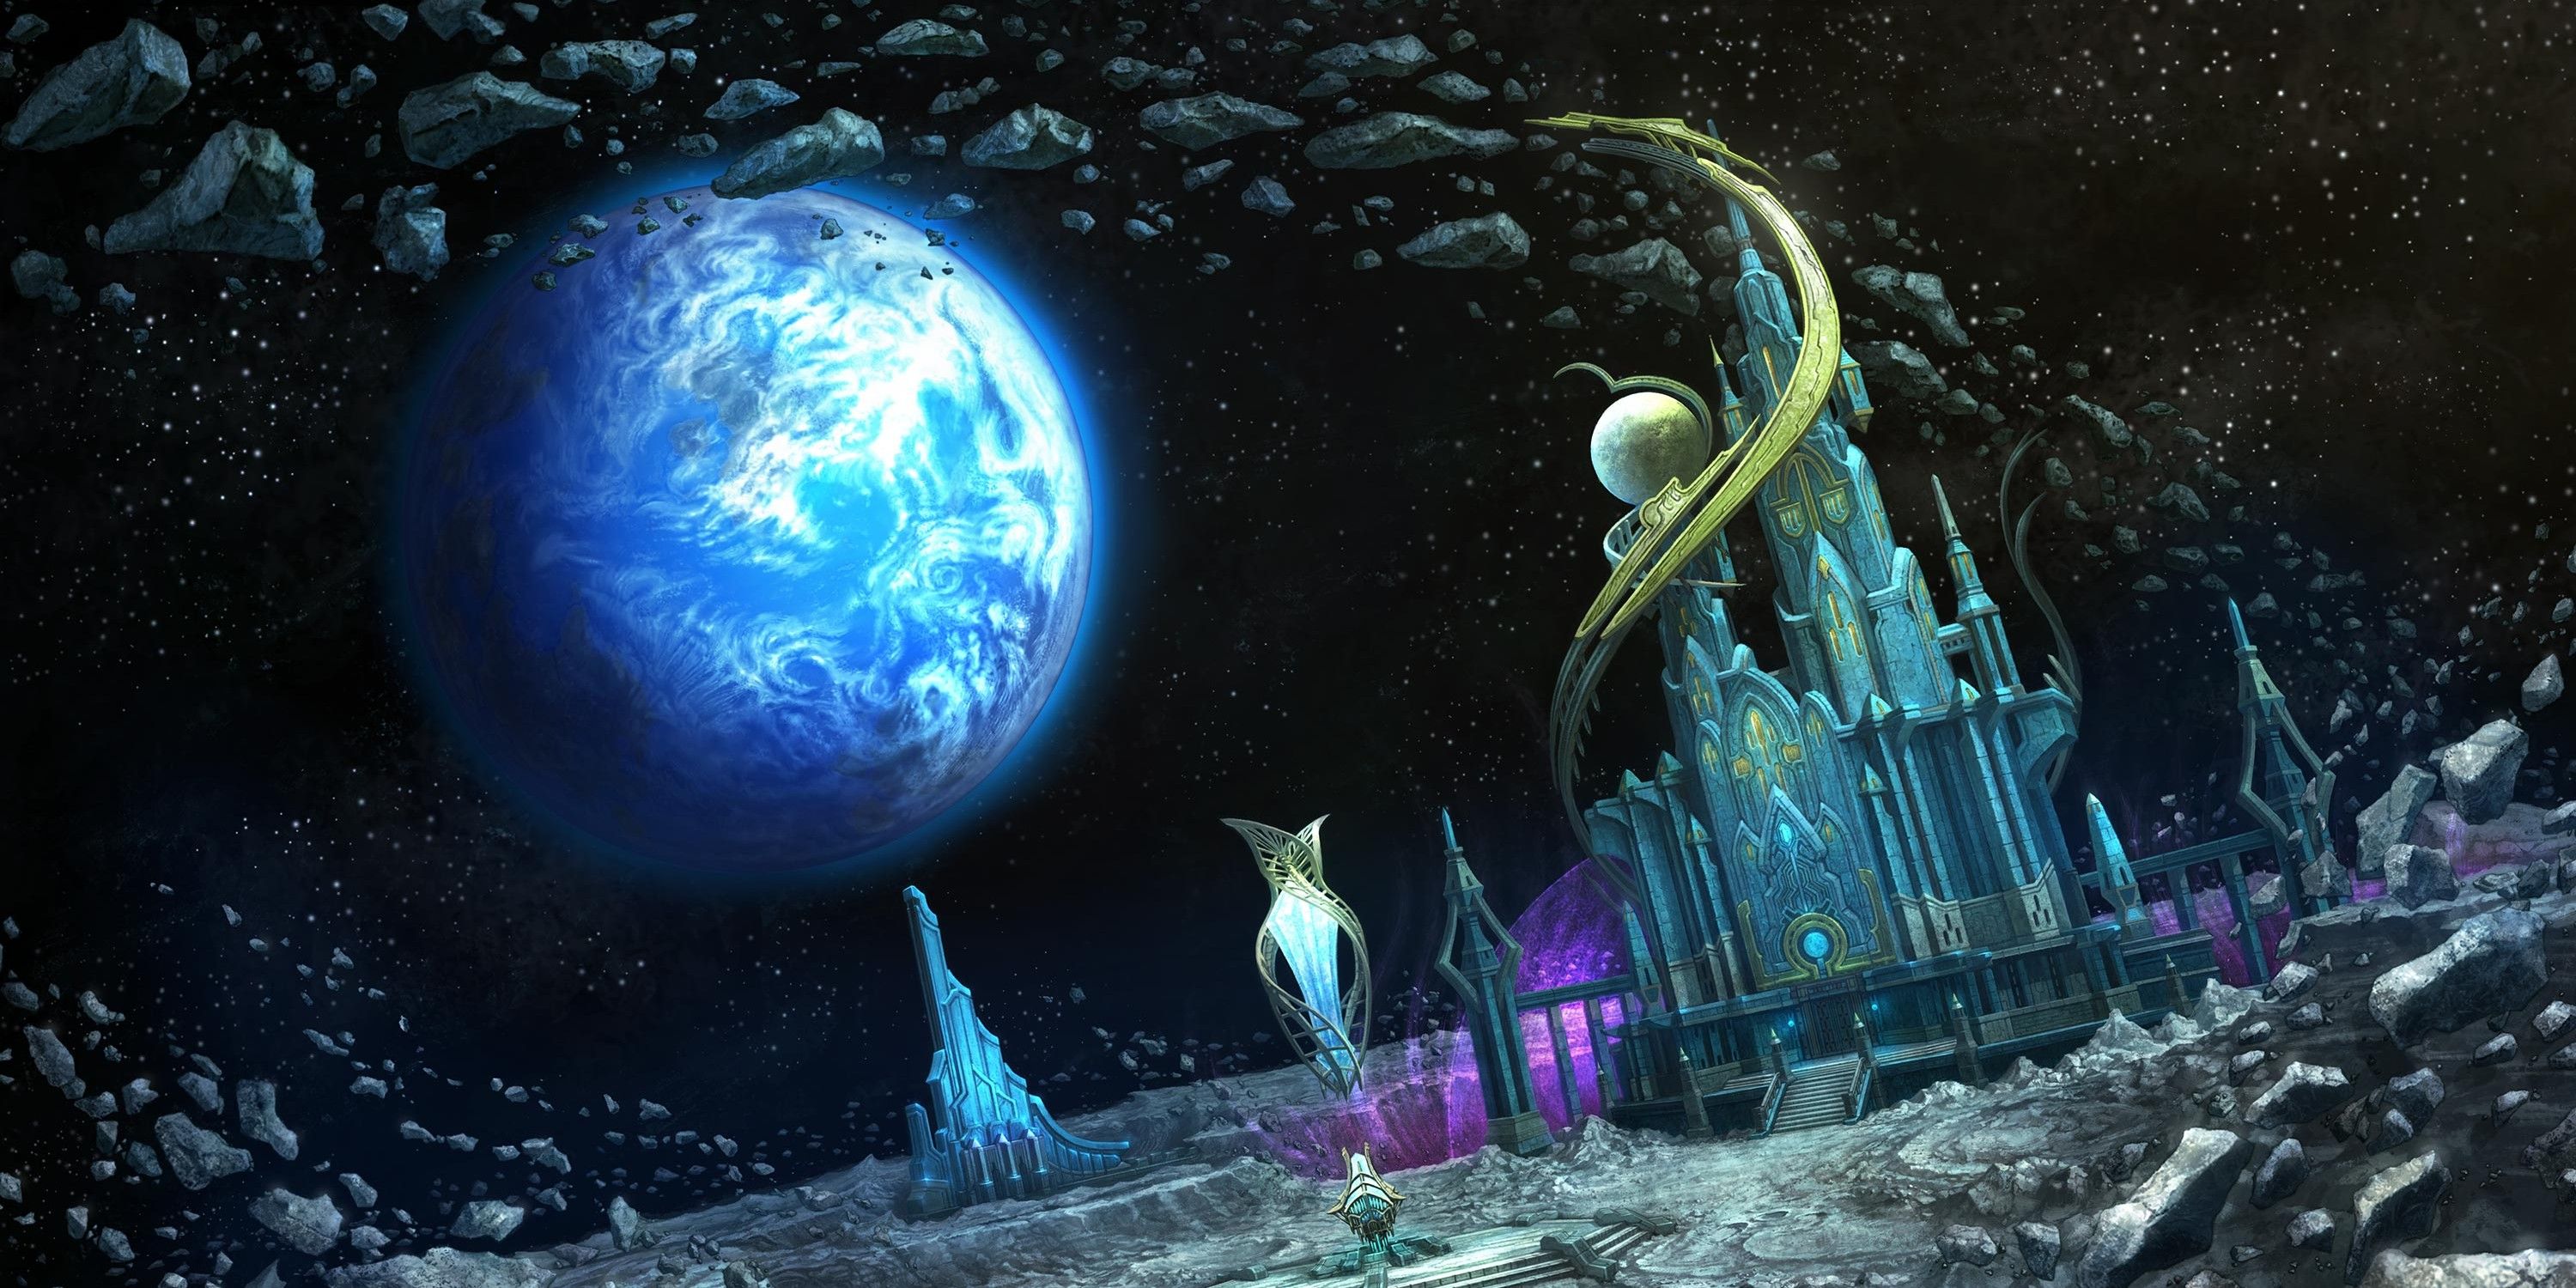 Final Fantasy XIV Endwalker Mare Lamentorum on the Moon